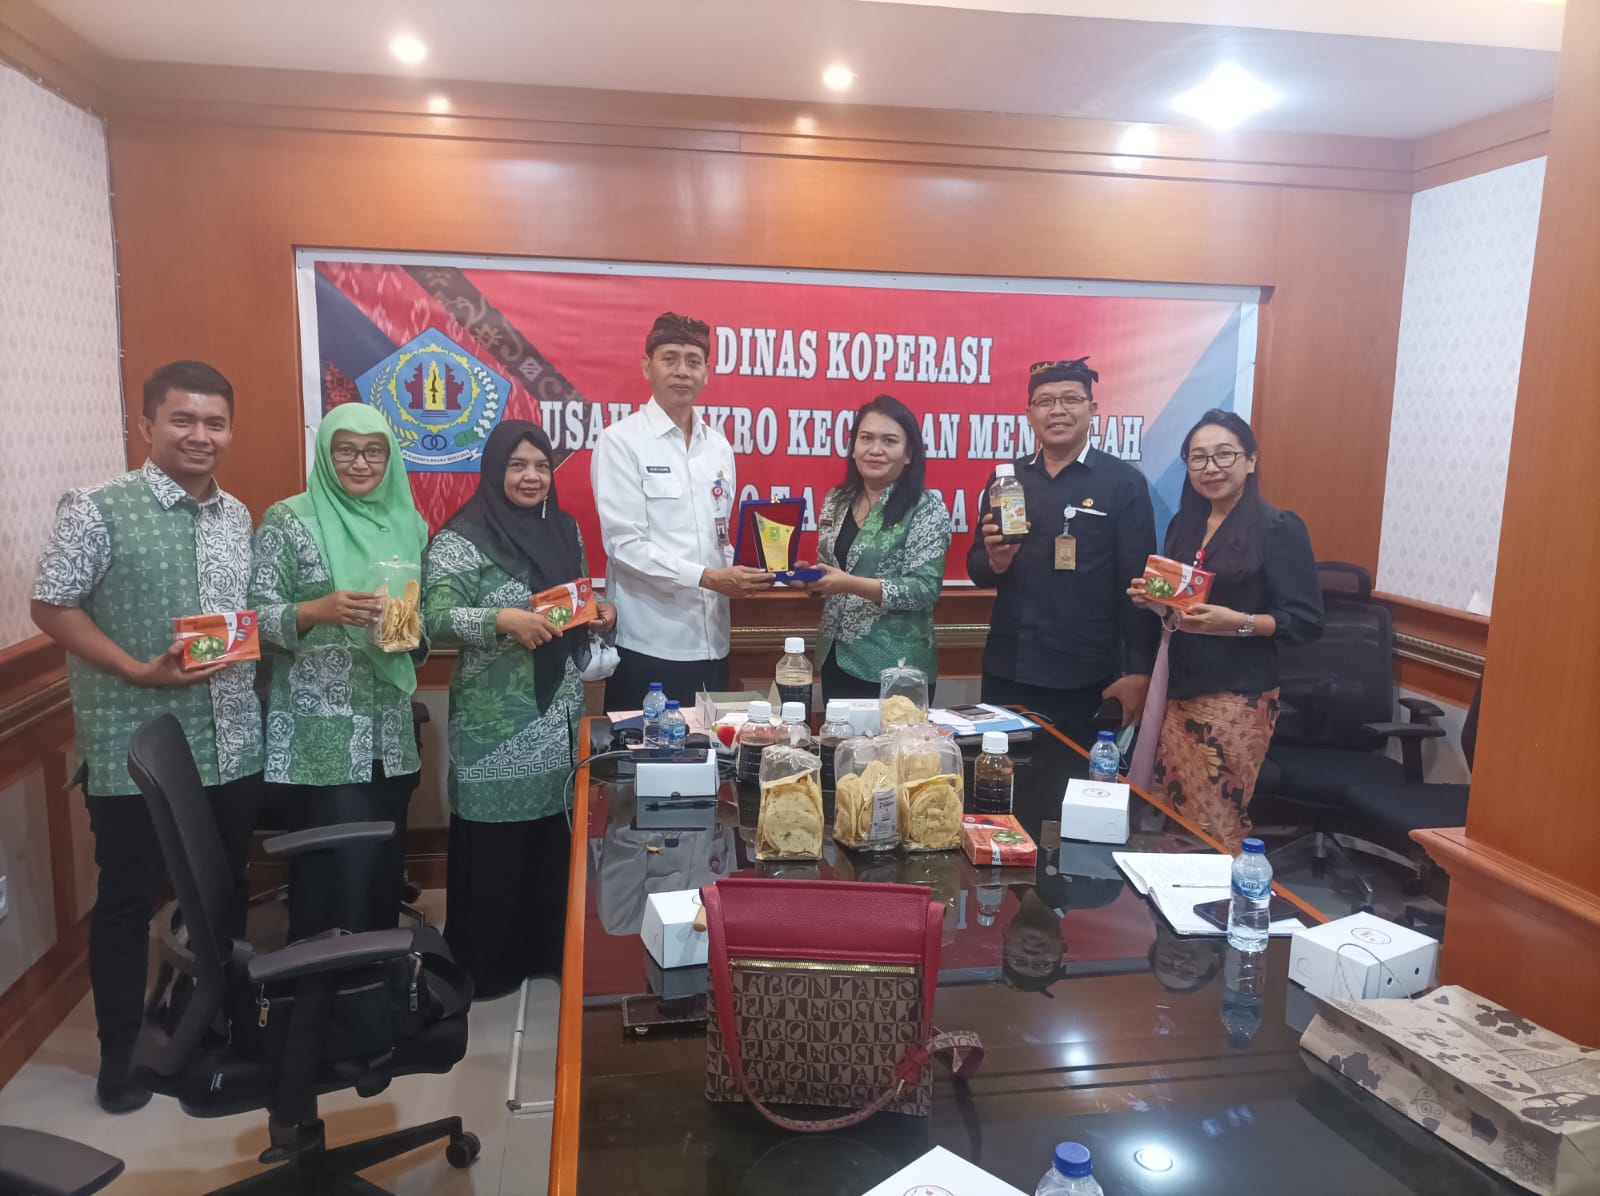 Kunjungan Kerja Dinas Koperasi UKM Kabupaten Indragiri Hulu ke Dinas Koperasi UMKM Kota Denpasar